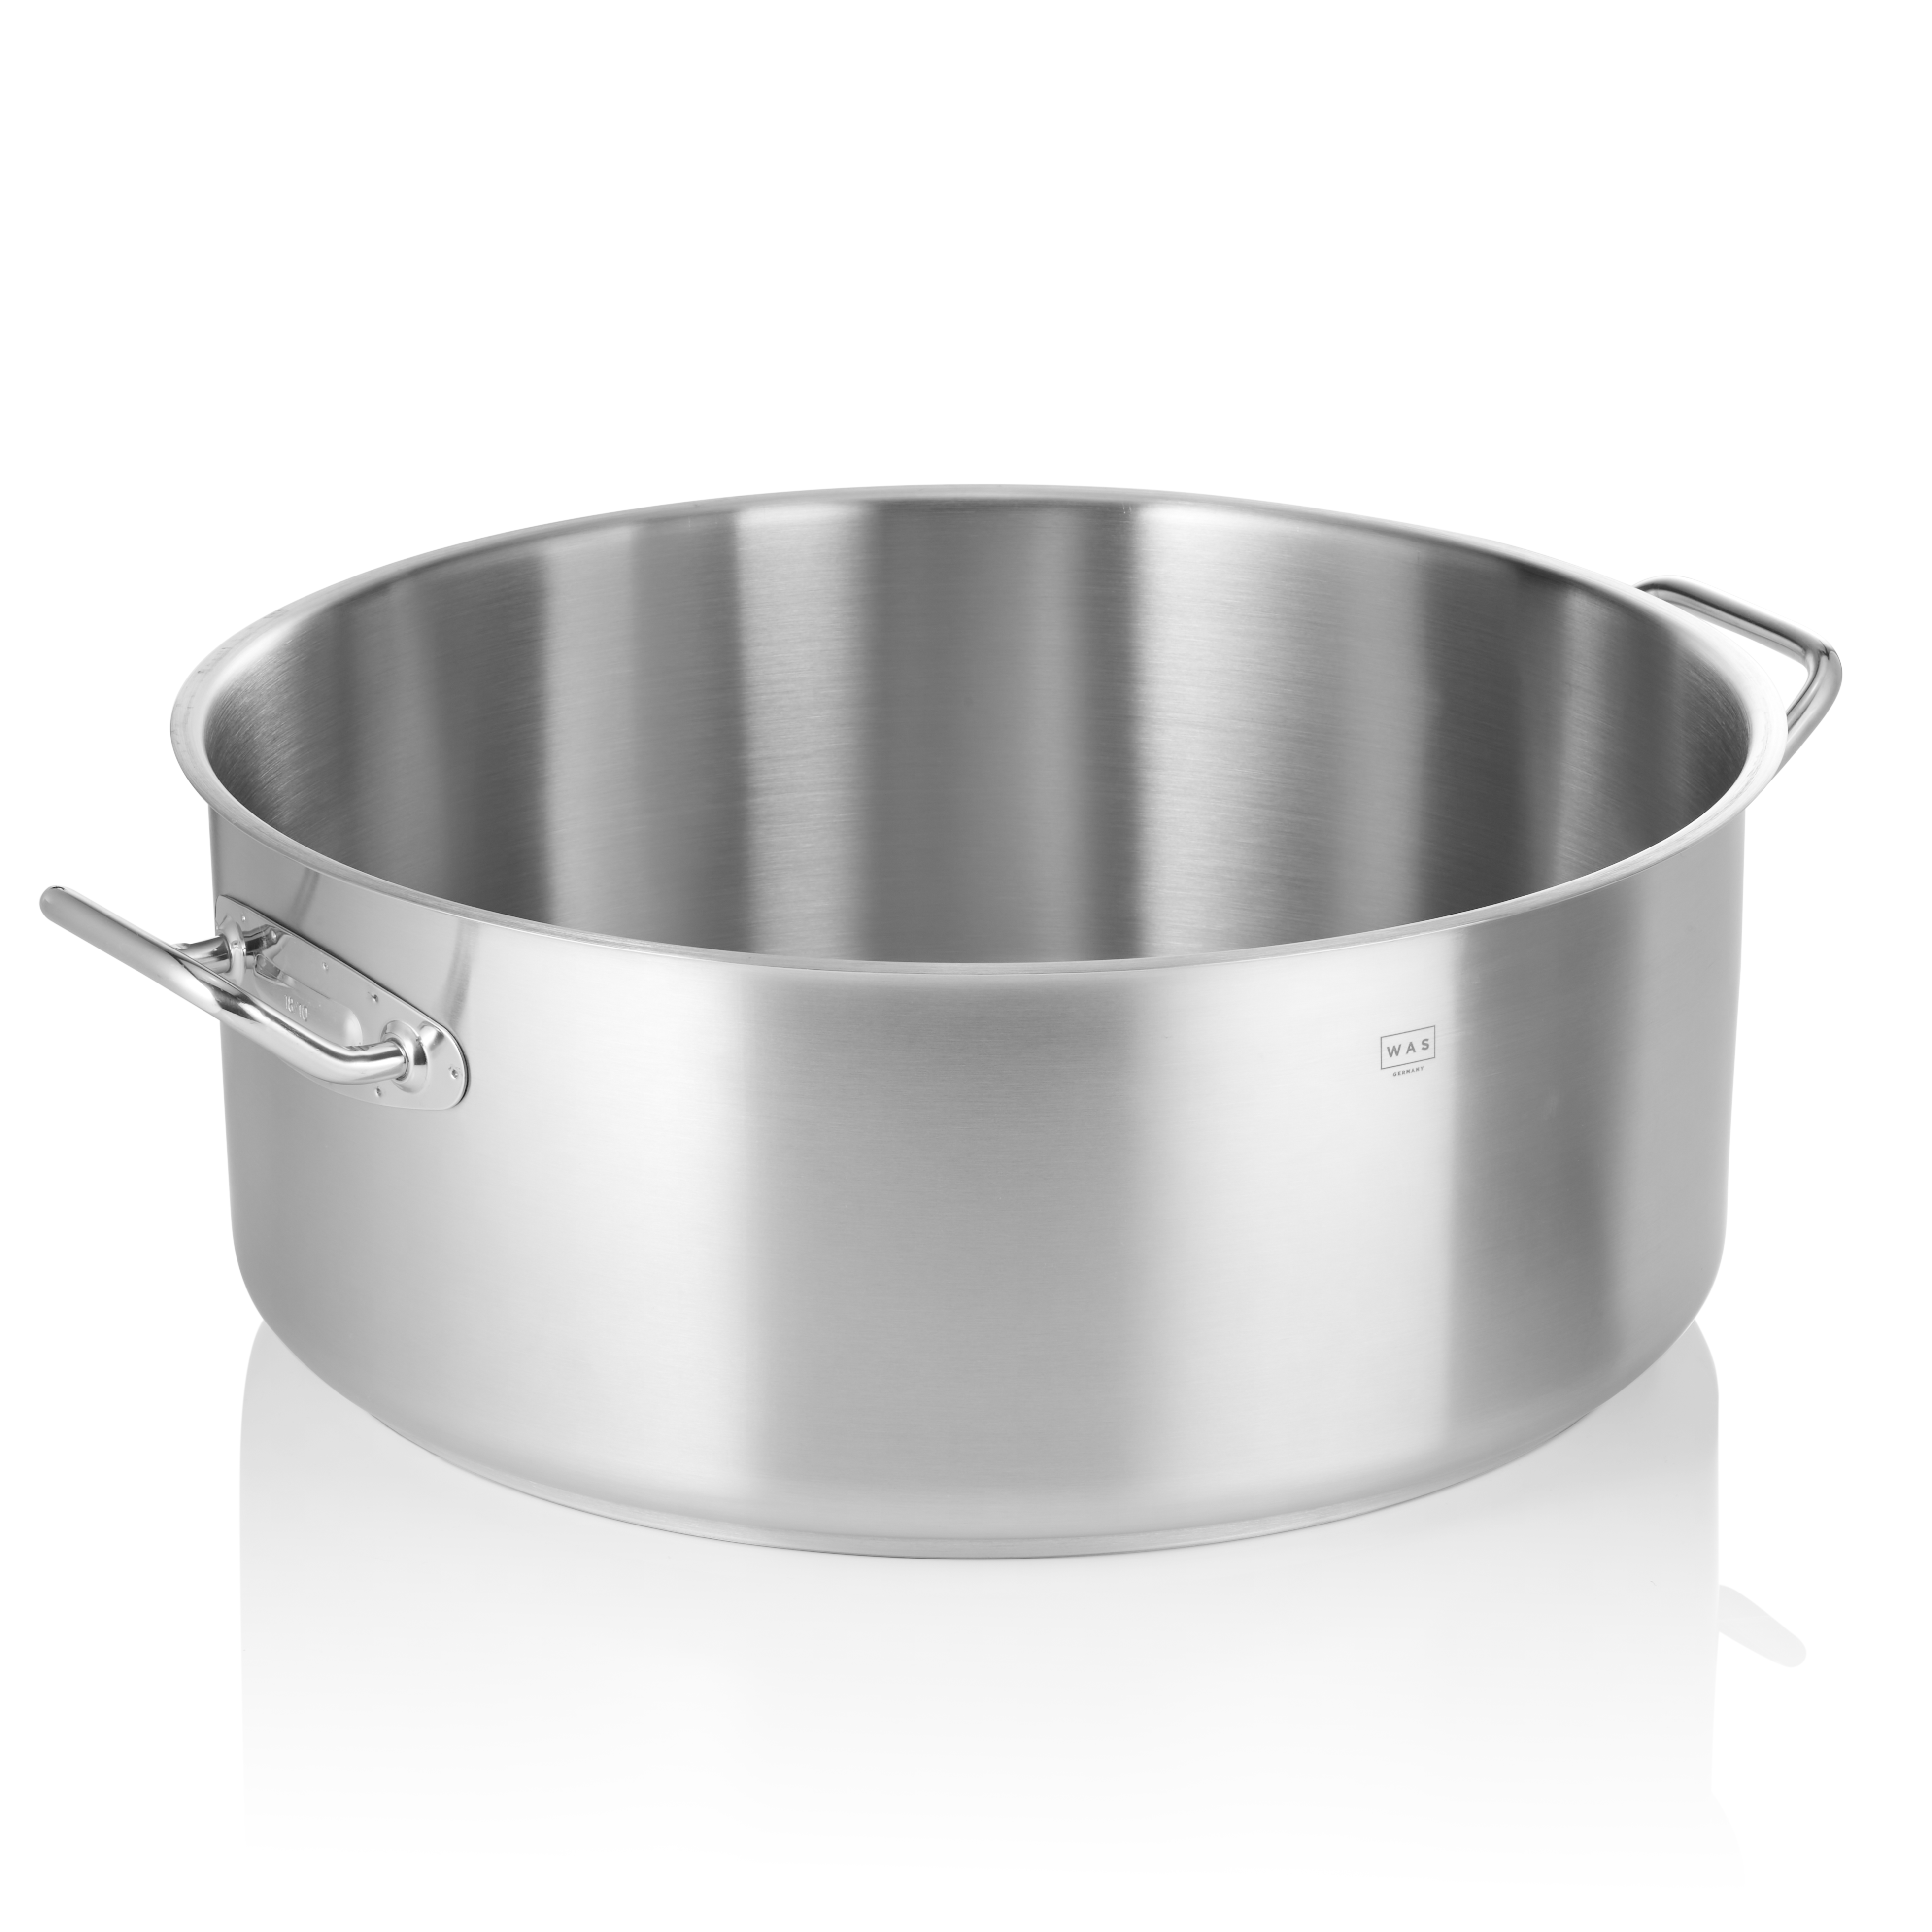 Bratentopf Cookware 21, Ø 50 cm, 38,0 Liter - Höhe 20,5 cm - Edelstahl 18/10